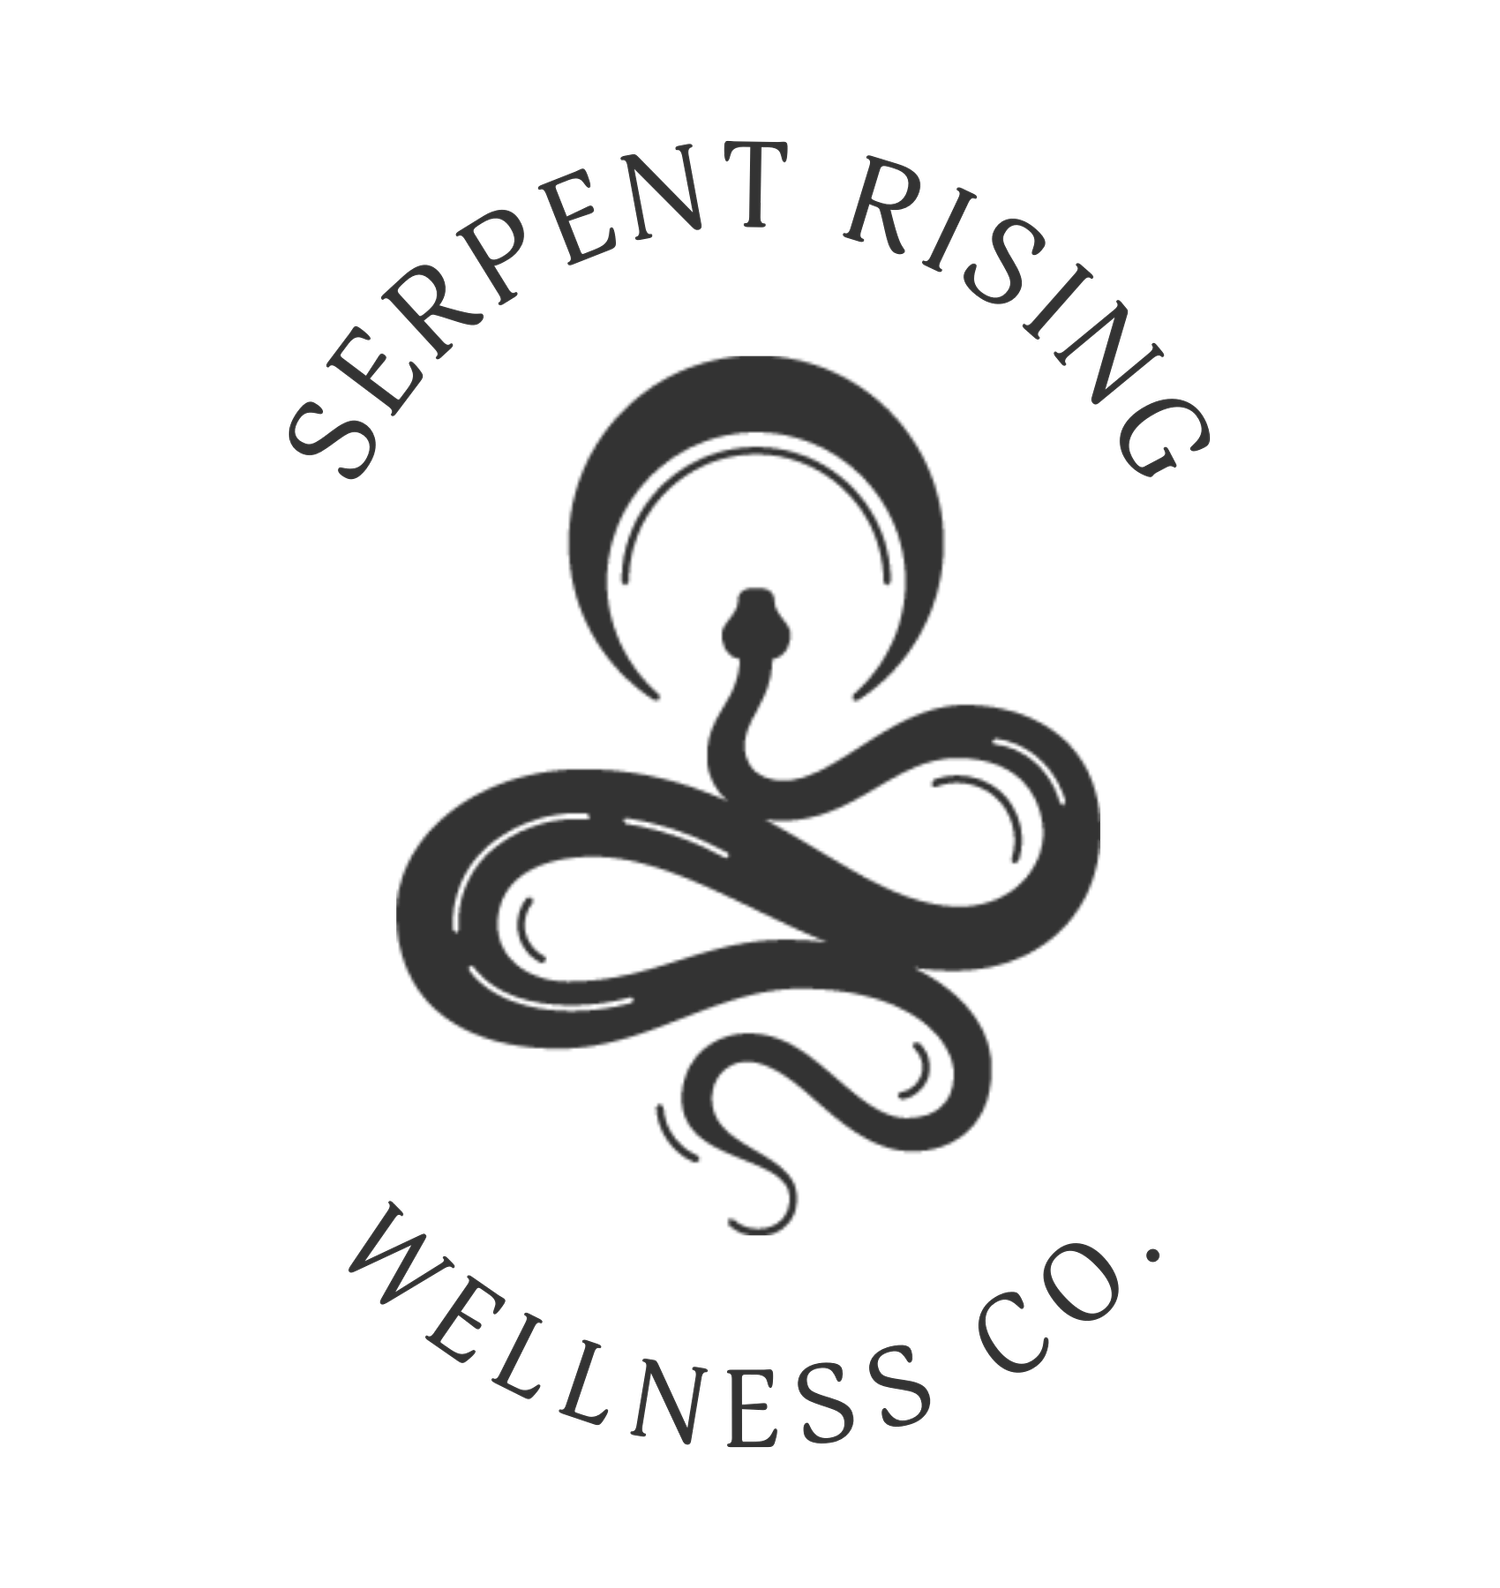 Serpent Rising Wellness Co.